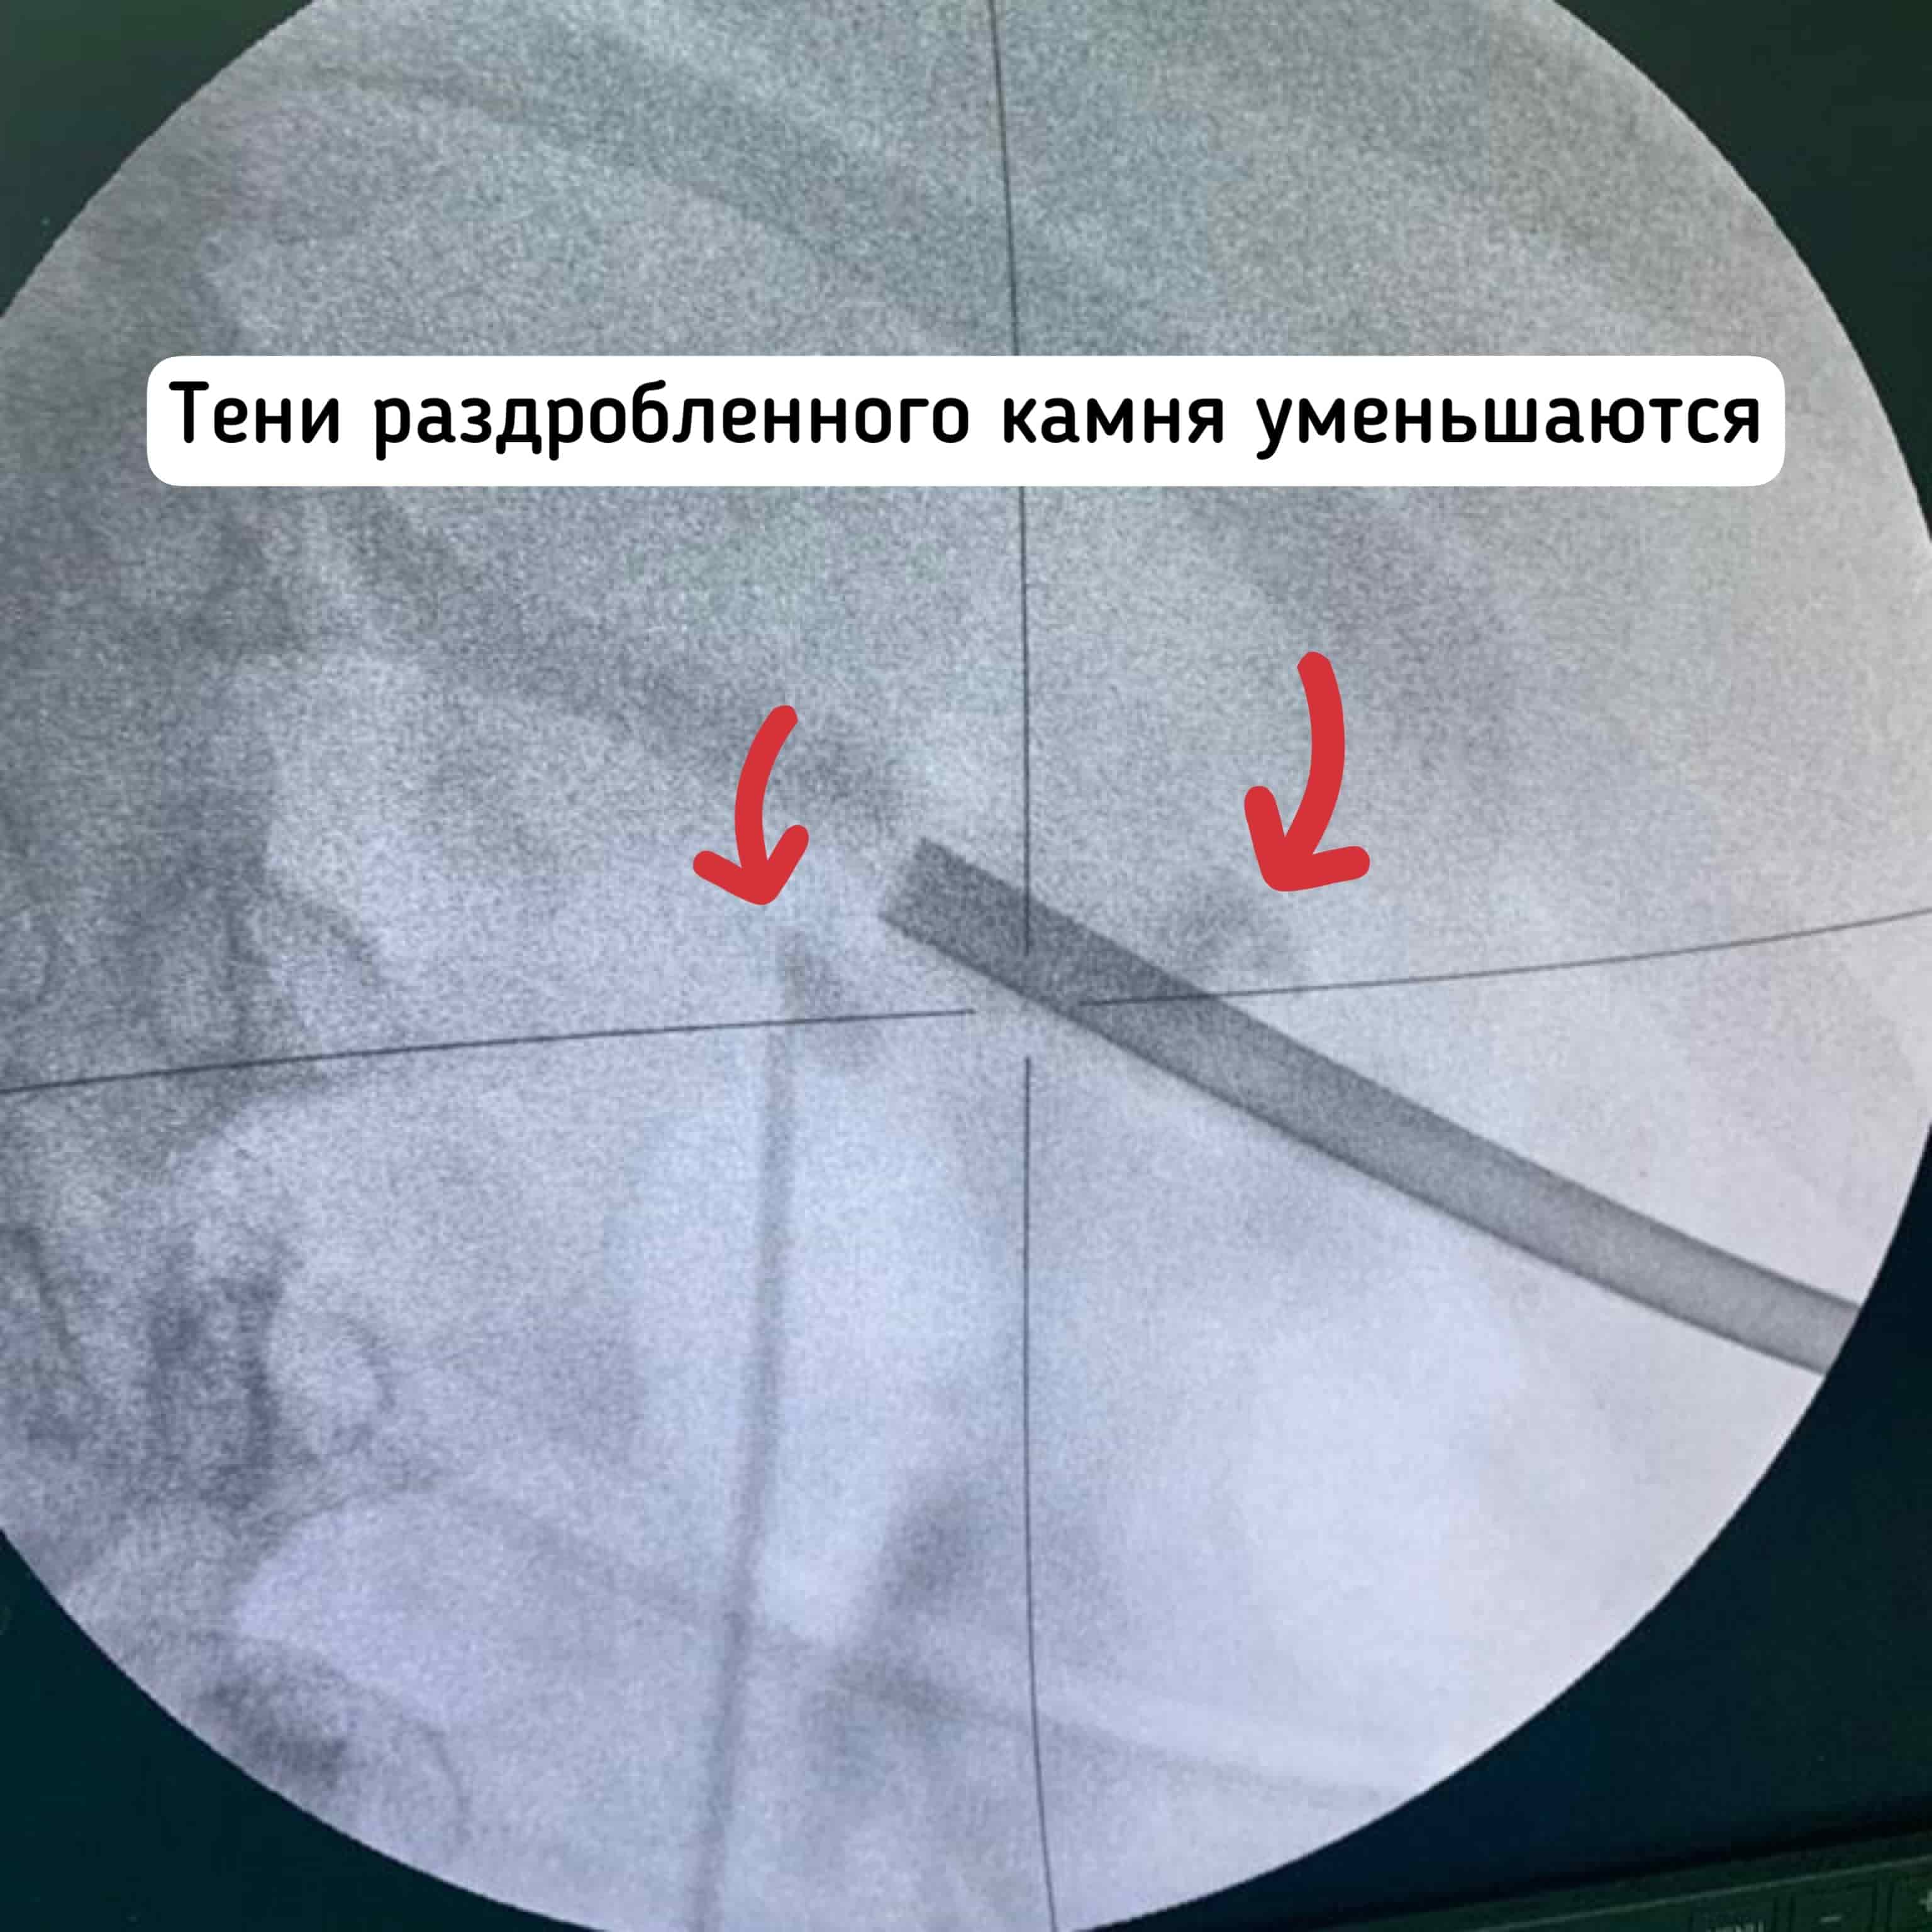 Удаление камня 4 см из почки в Москве, операция лазерное волокно, ультразвук